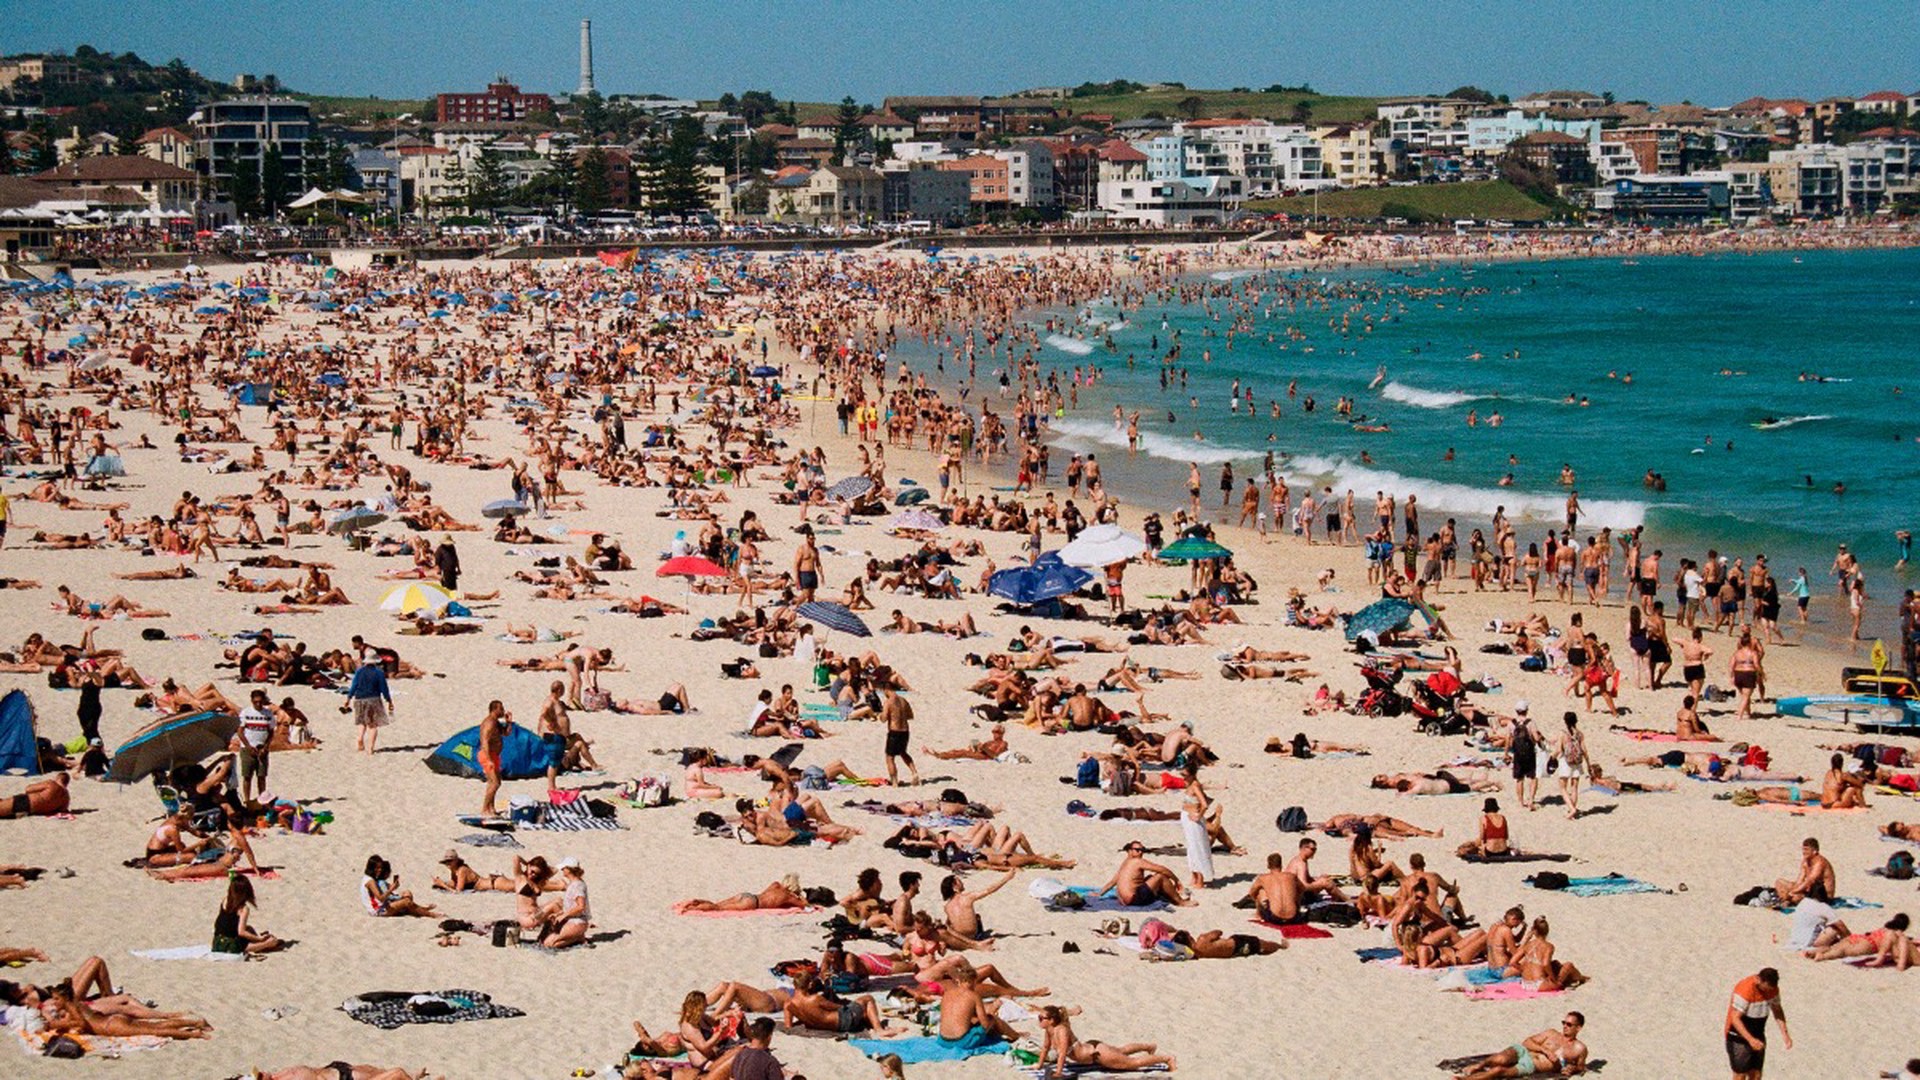 Myśl Polska: поляки ведут пляжно-барные войны против россиян на курортах Турции